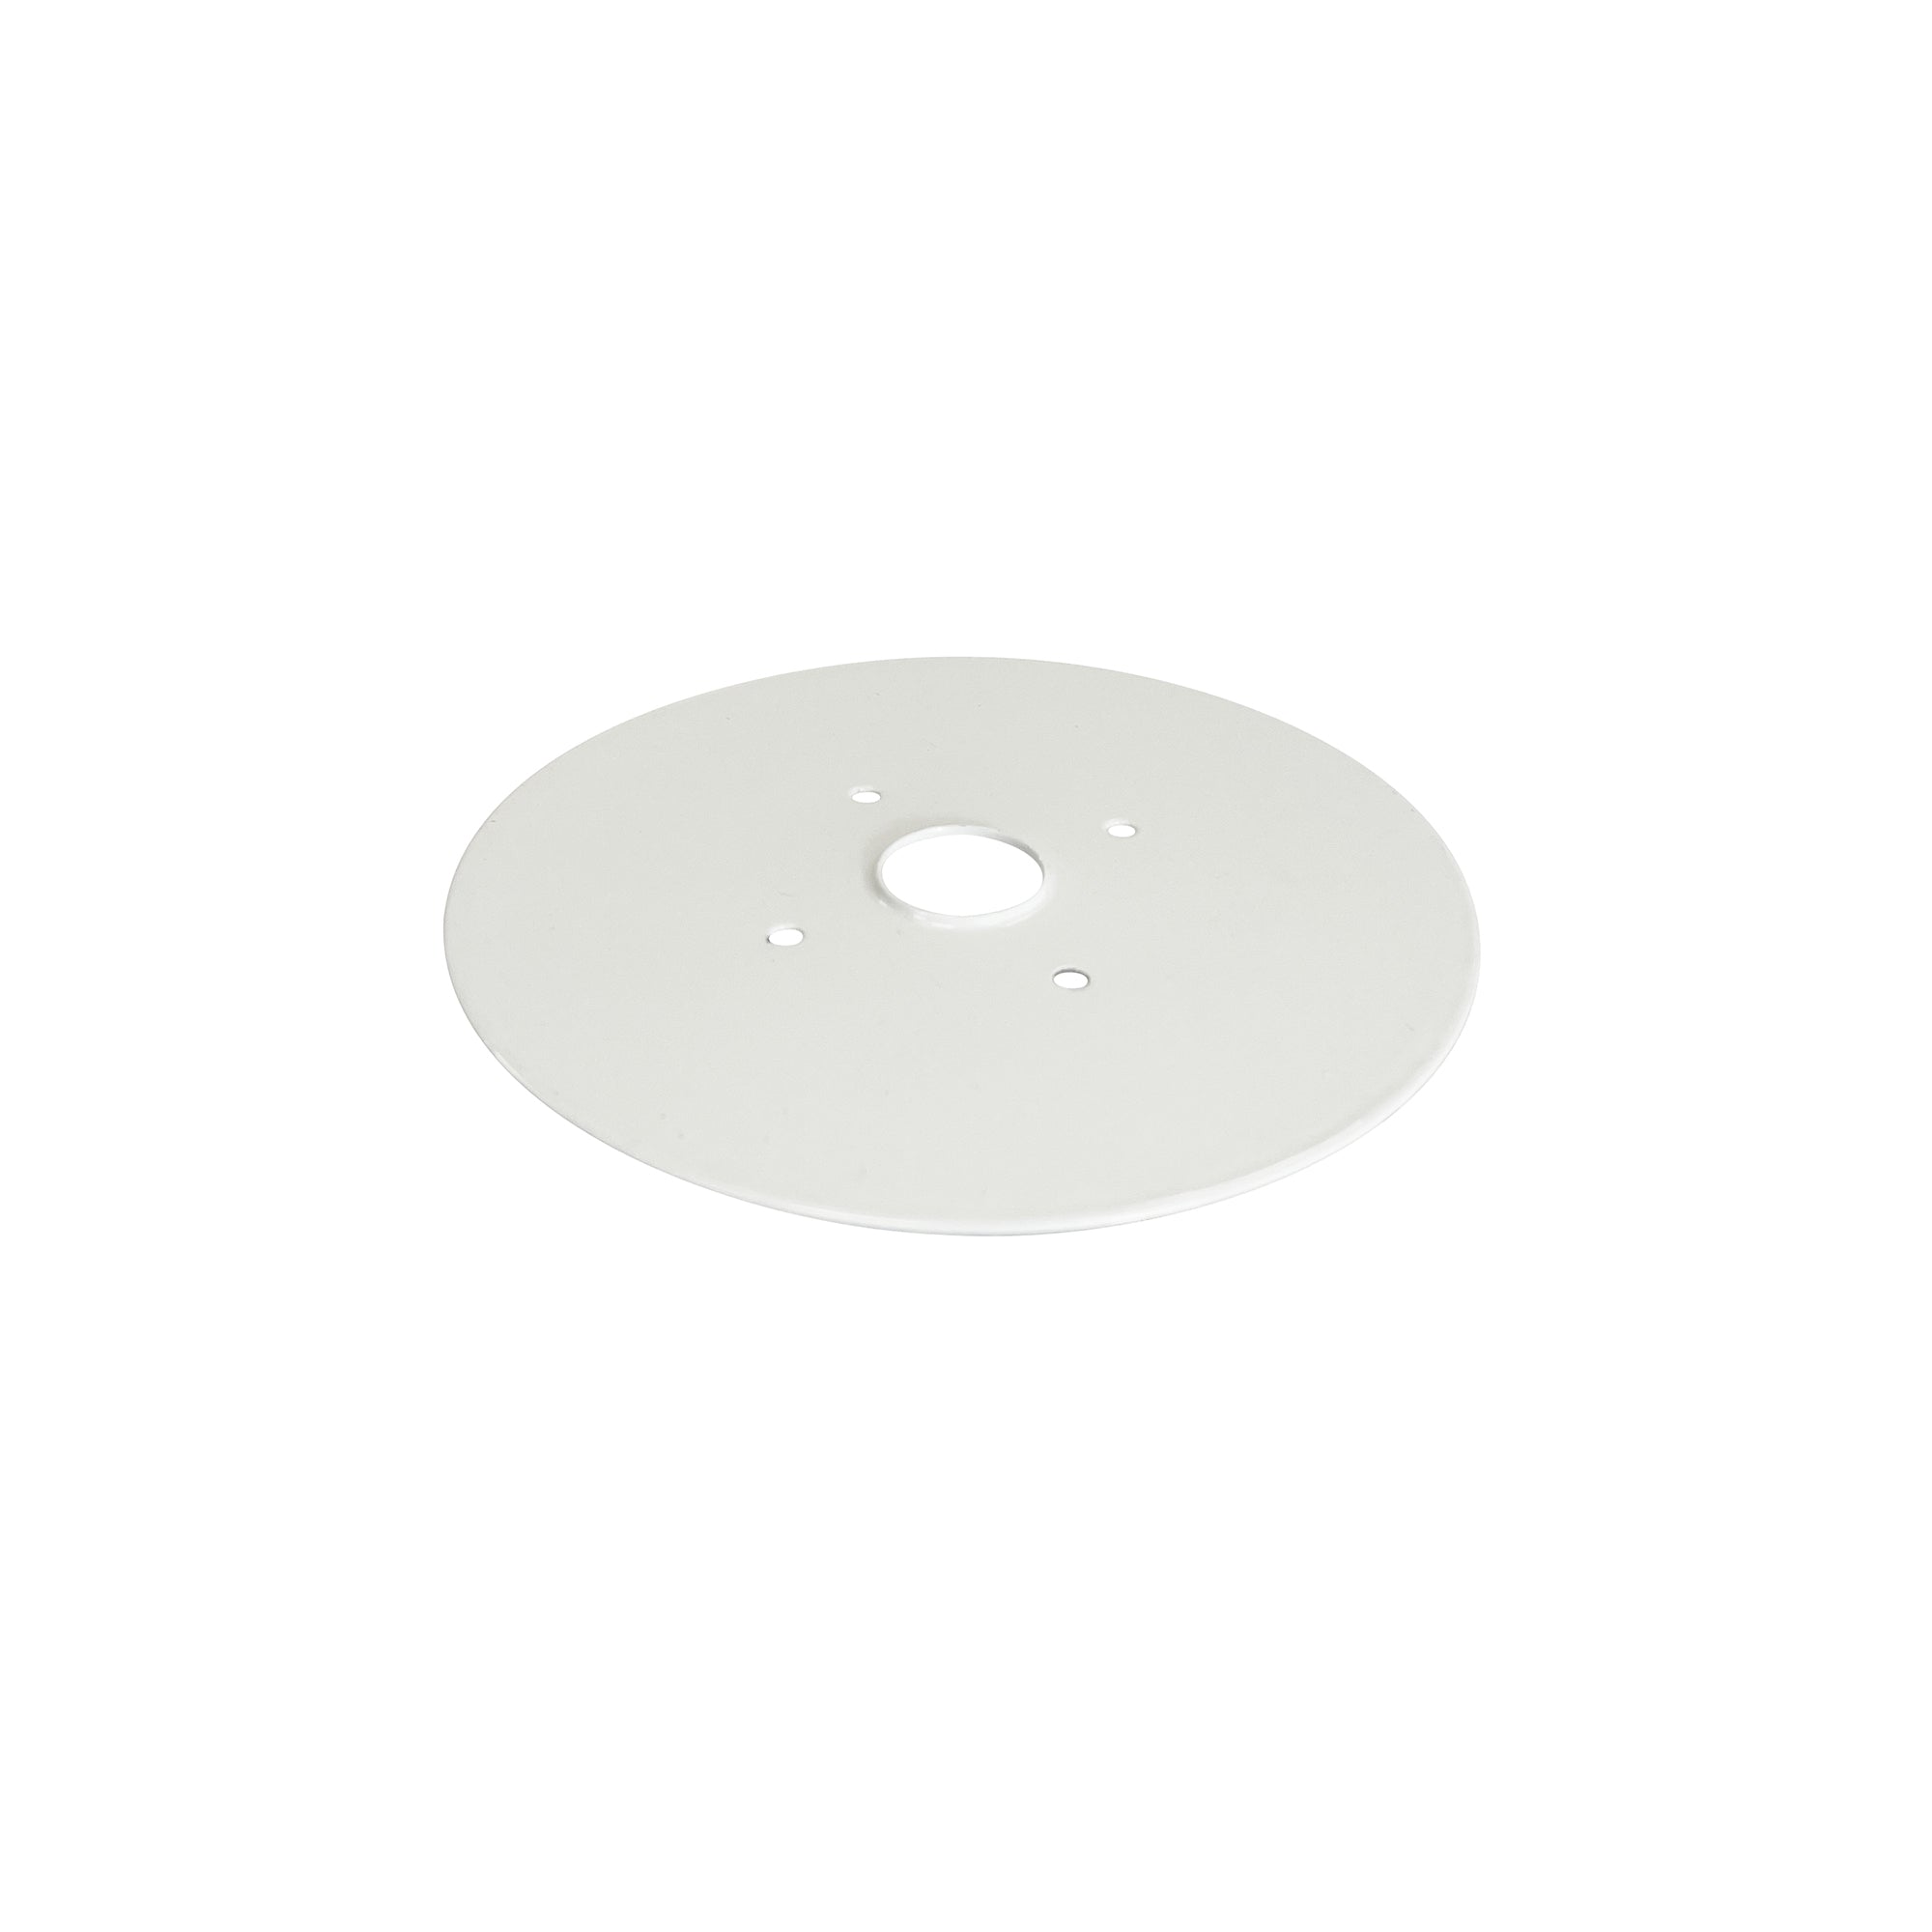 Nora Lighting NLSTRA-JBCW - Linear - Junction Box Cover Plate for NLSTR, White finish